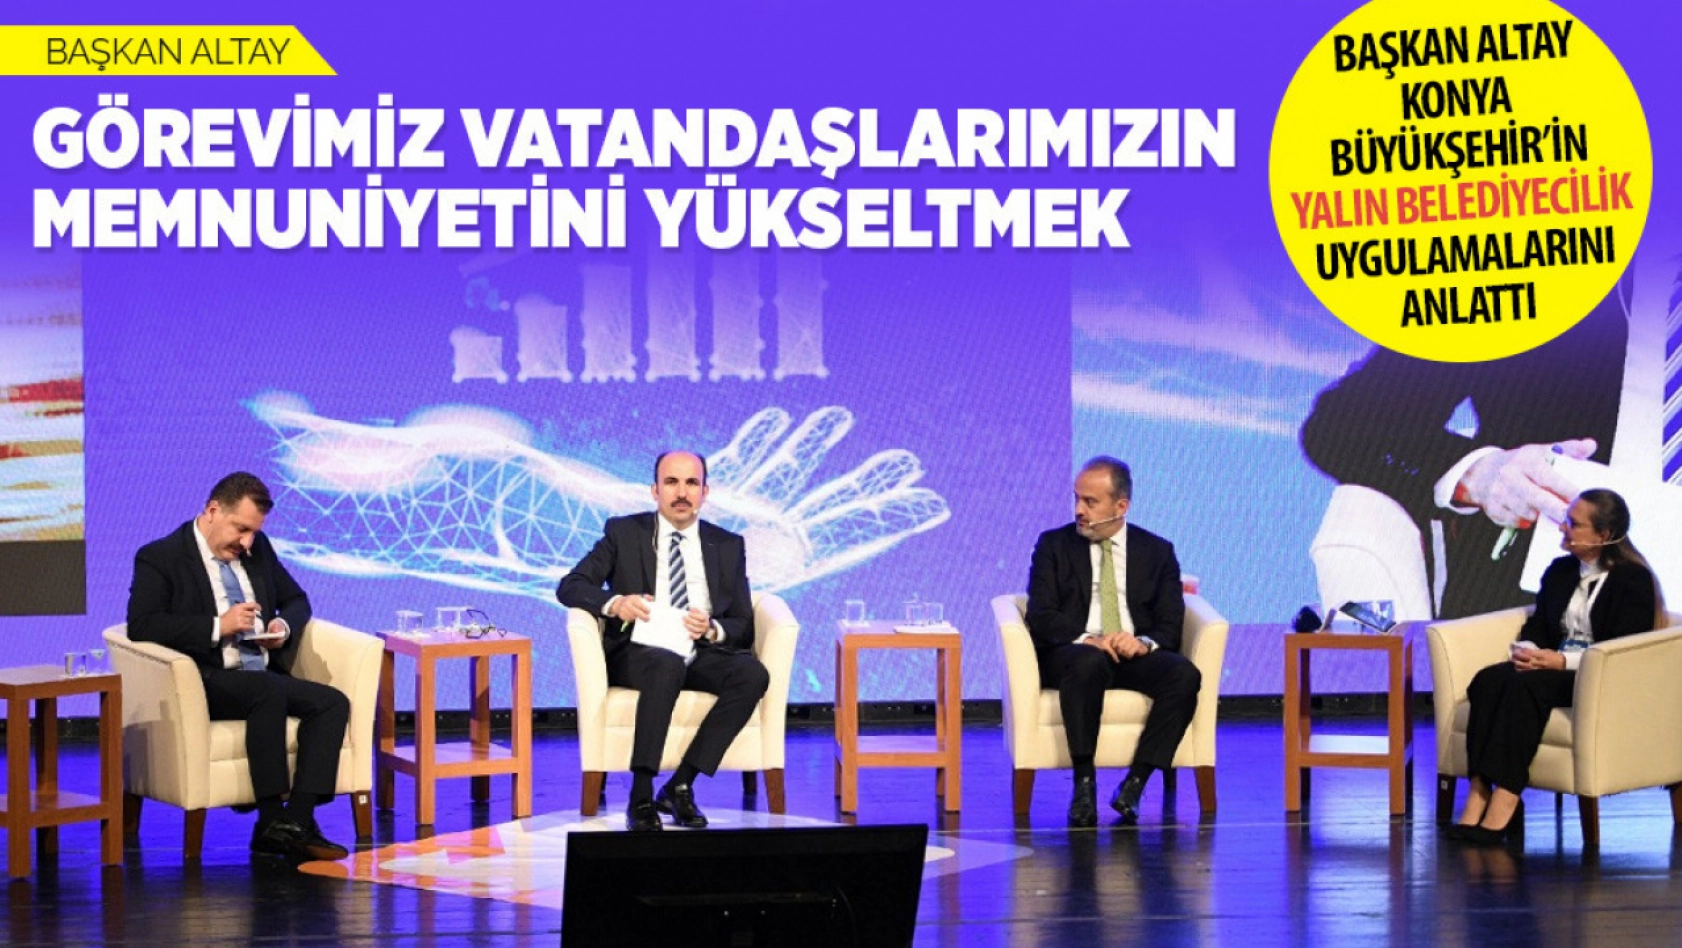 Konya Büyükşehir Belediyesi'nden yalın belediyecilik başarısı